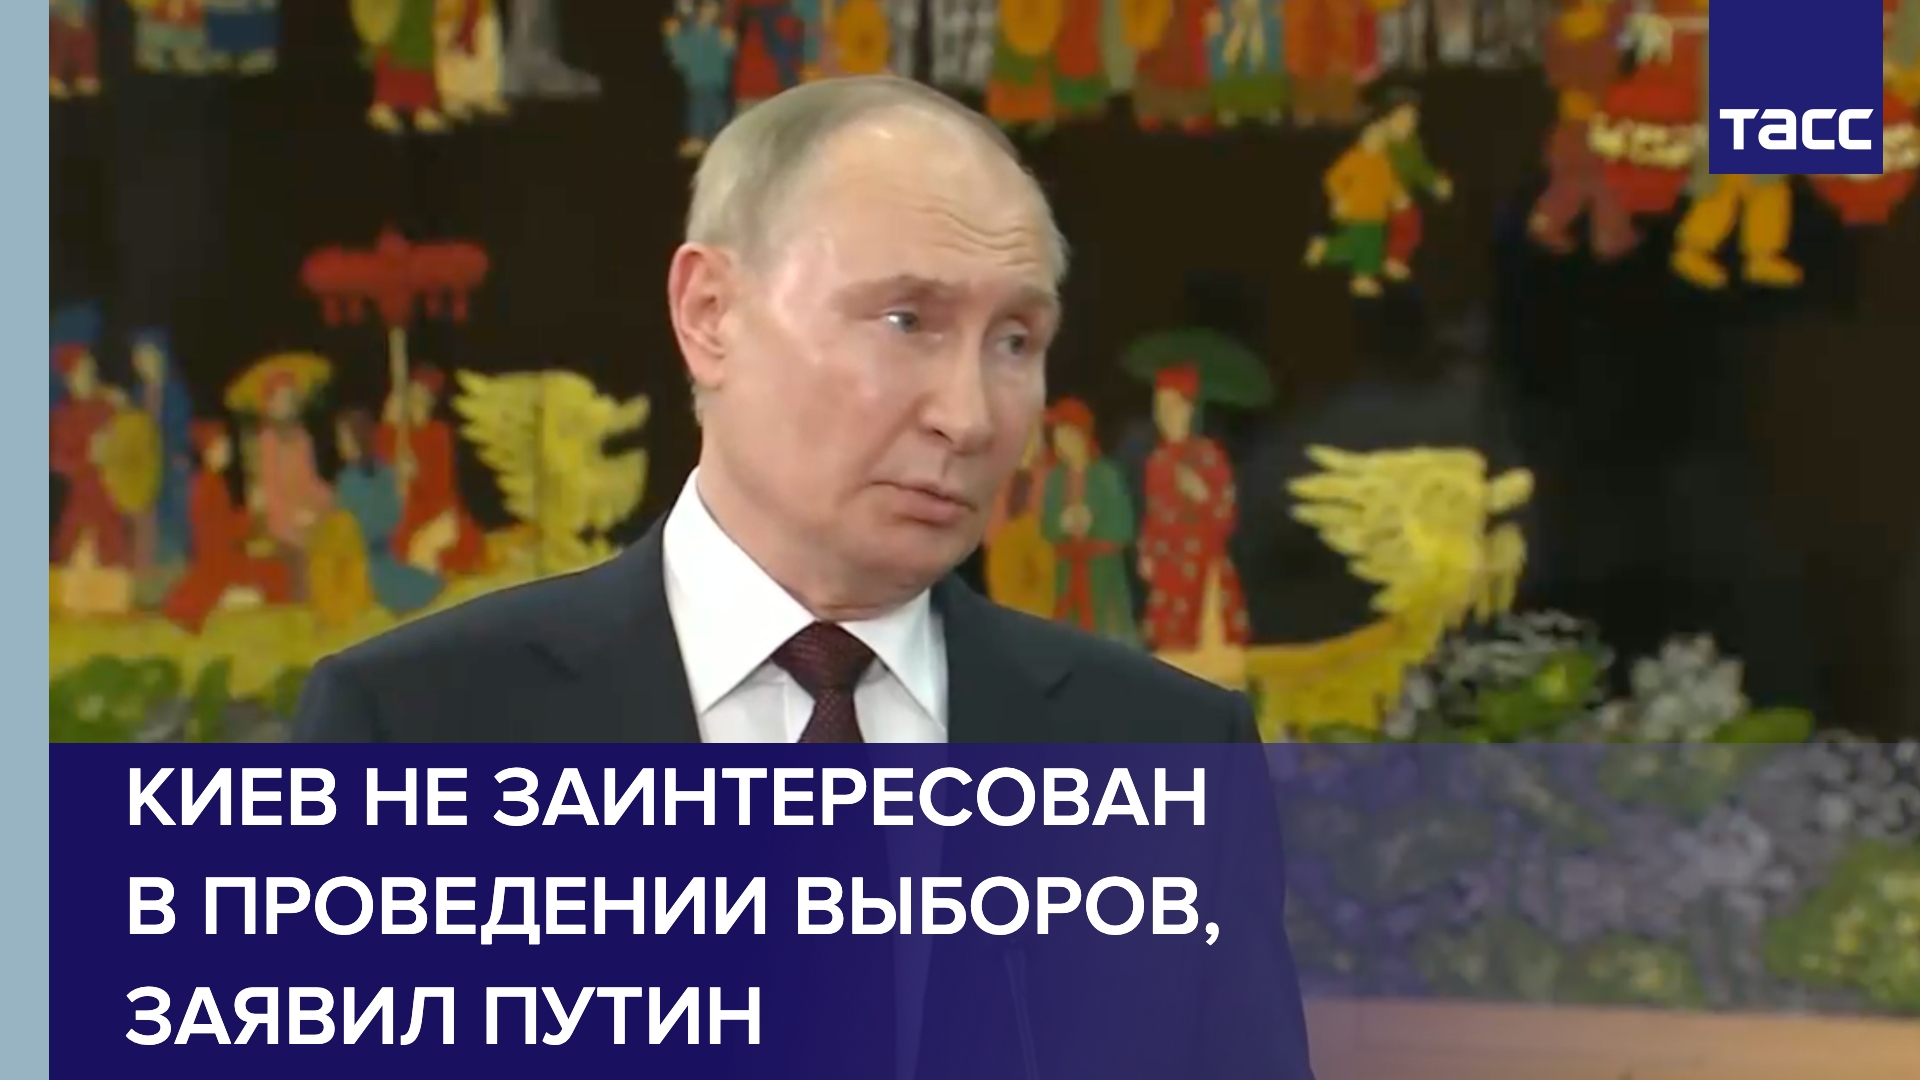 Киев не заинтересован в проведении выборов и вечно будет затягивать с этим, заявил Путин